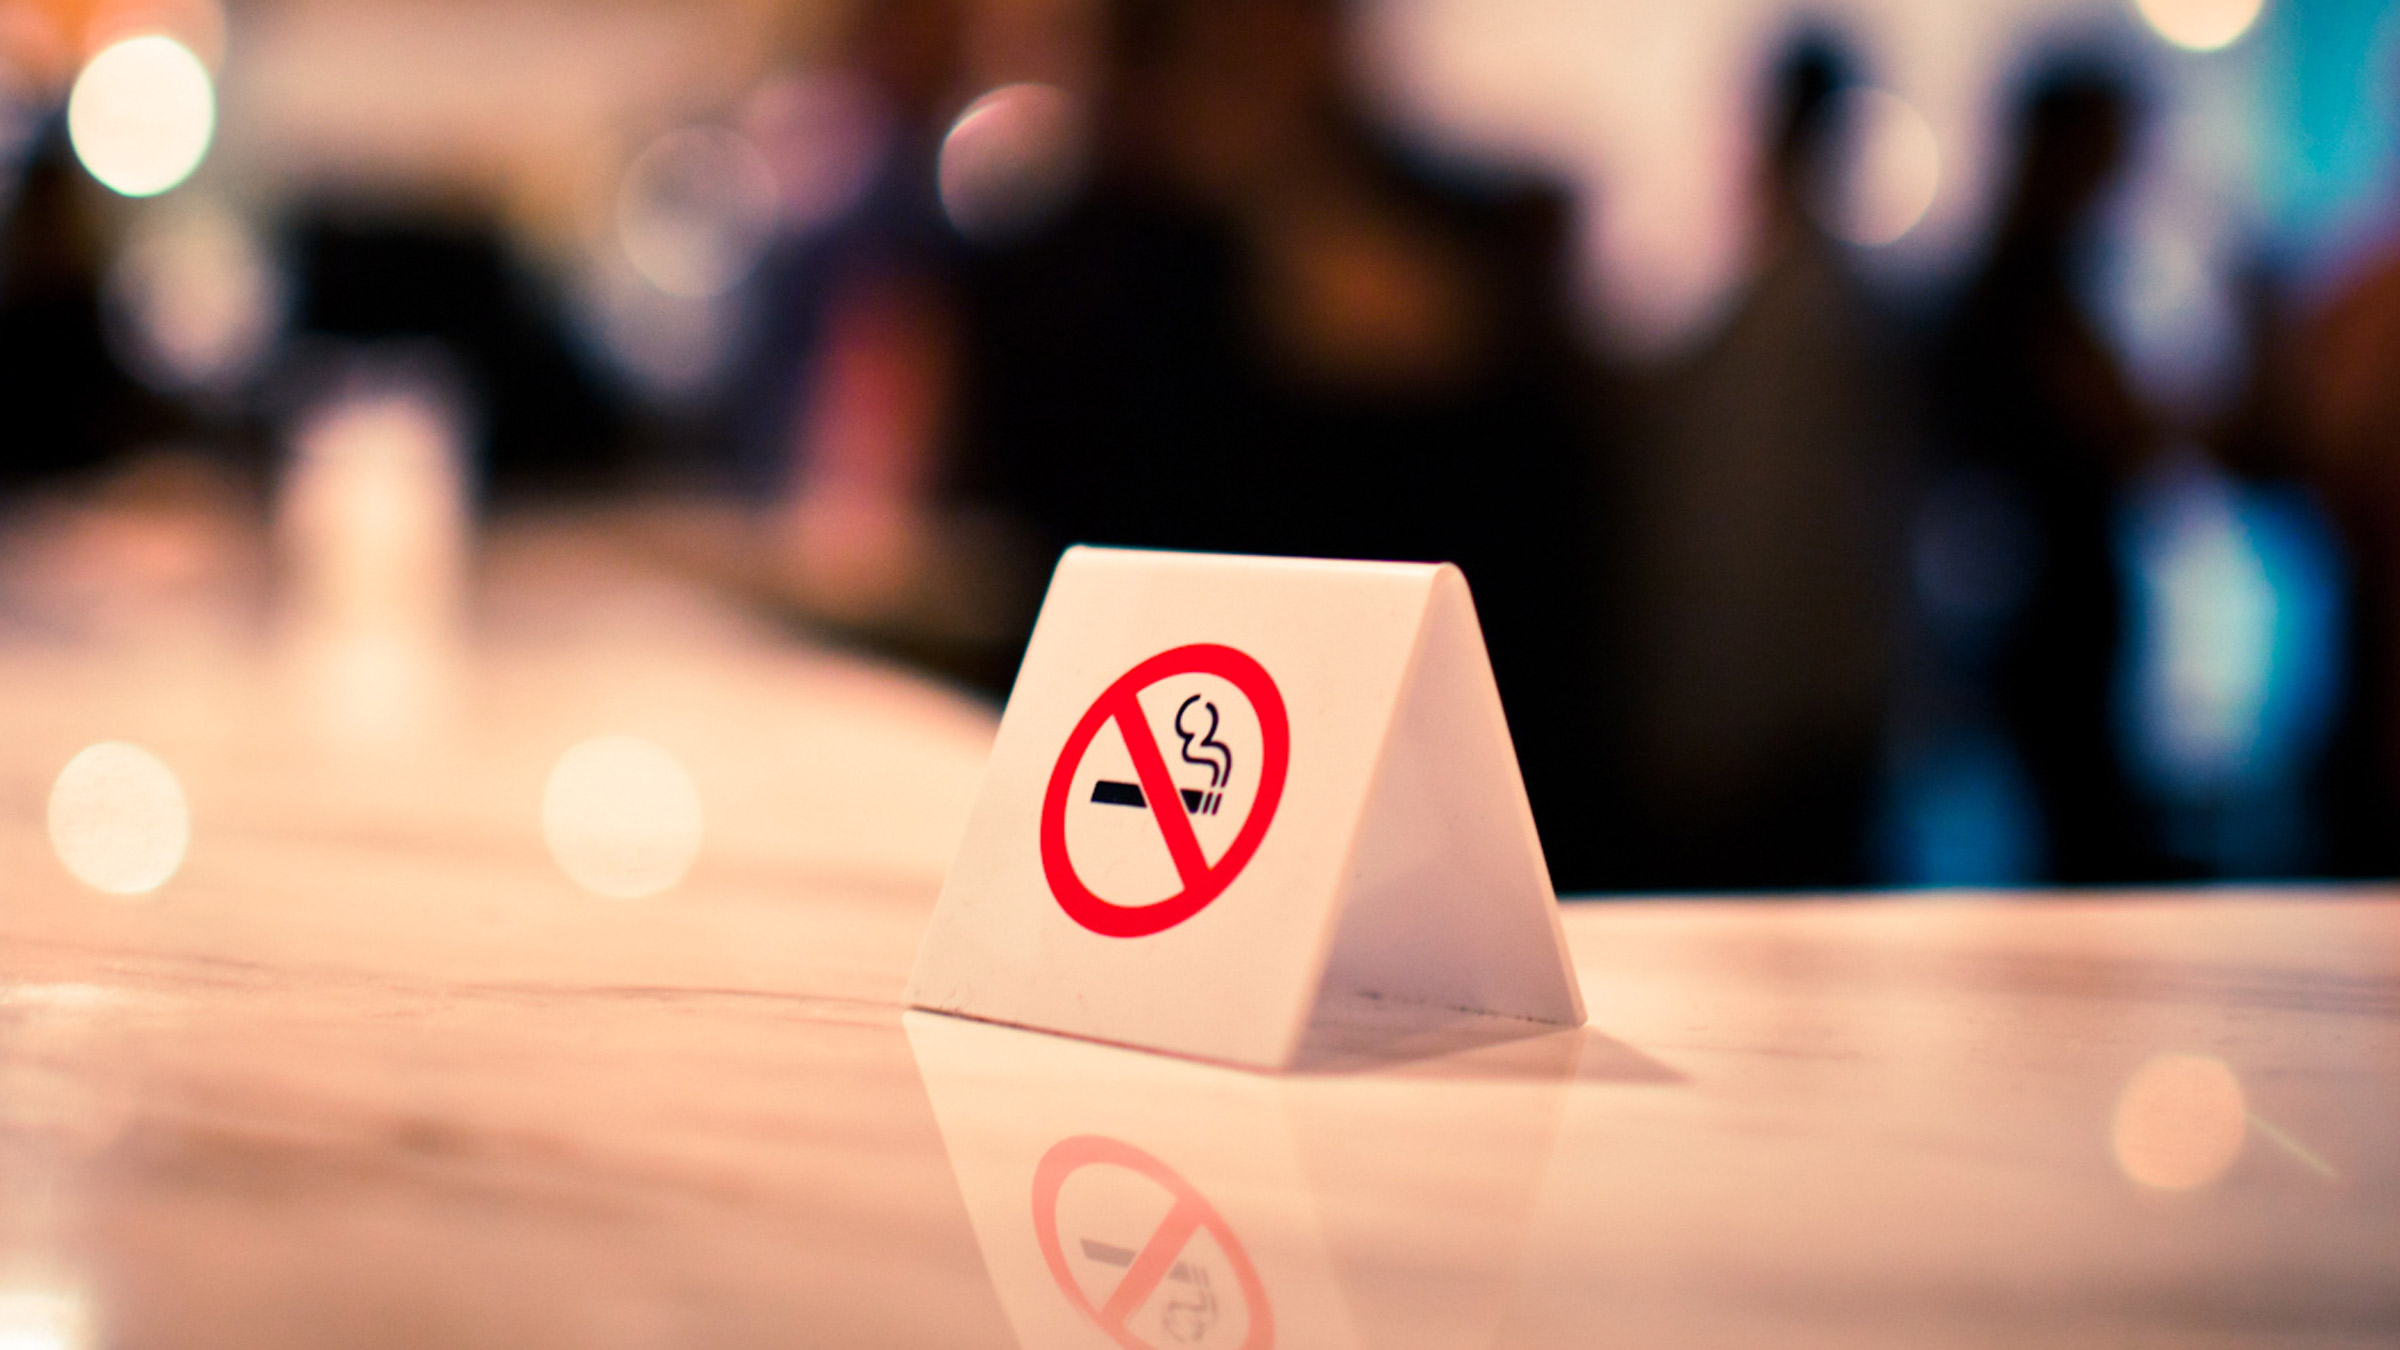 Smoking cessation: no smoking sign 109837892